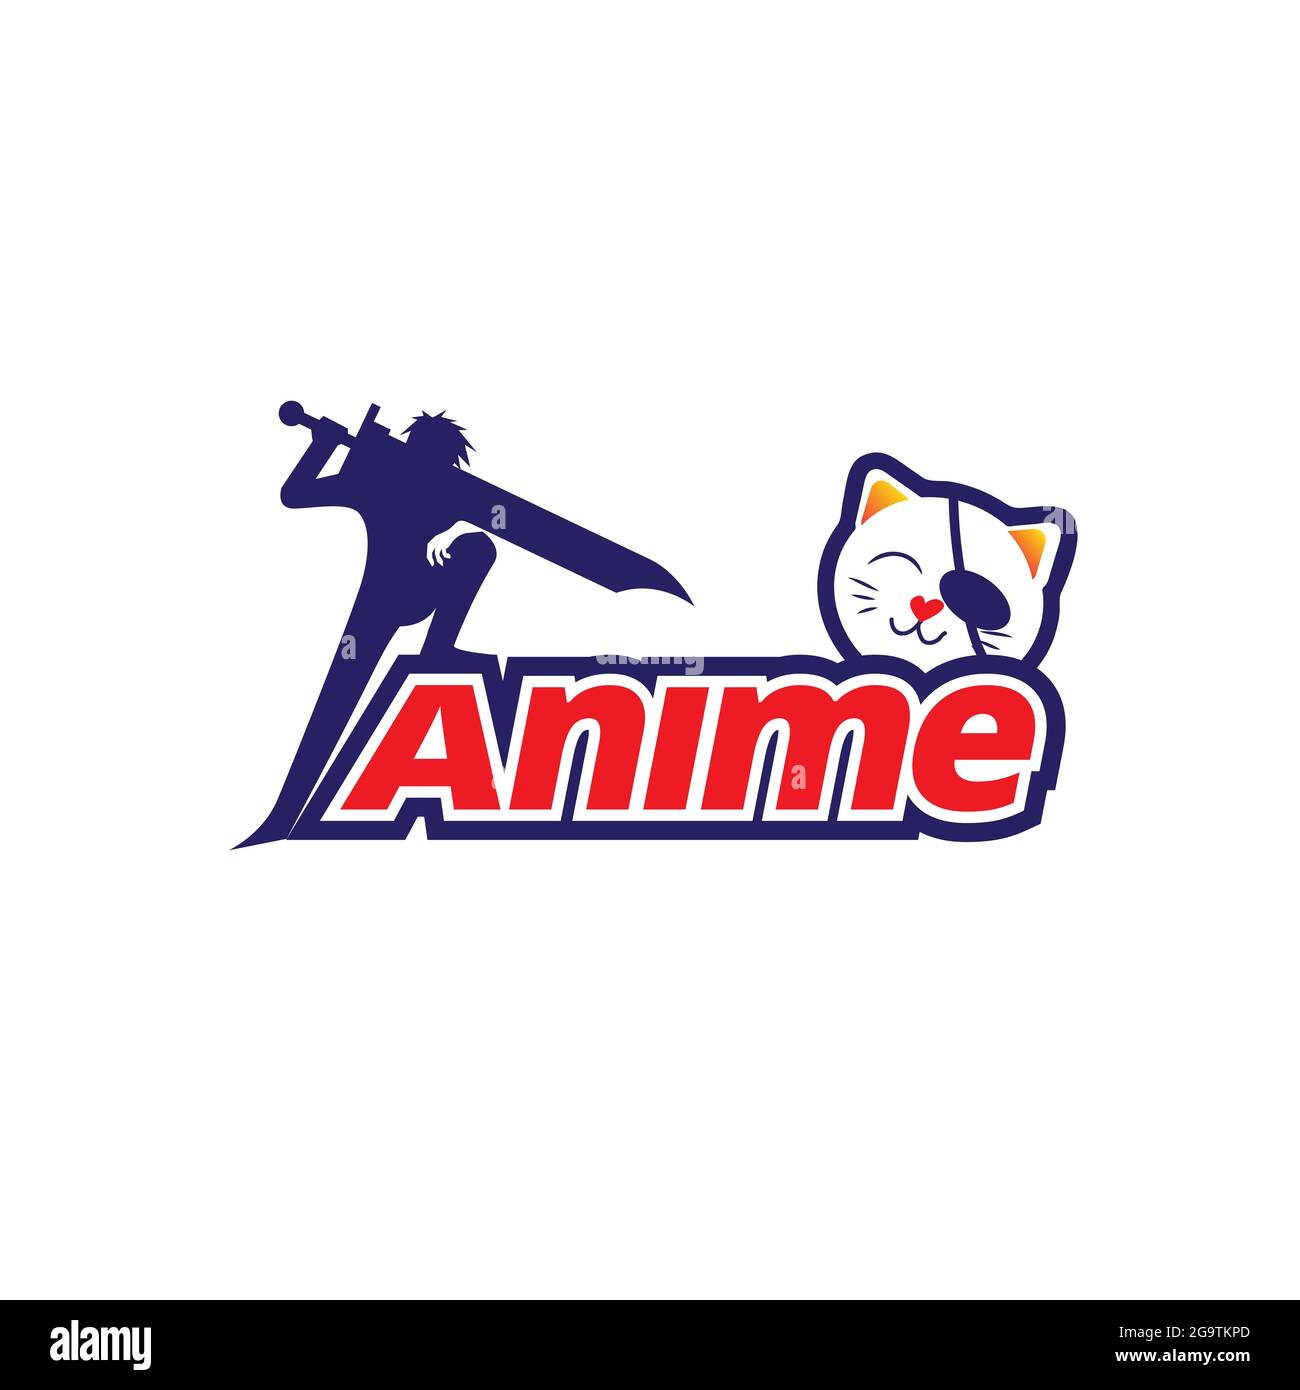 Anime Silhouette Illustration Vektor für T-Shirt, Shop, oder einen anderen Zweck Stock Vektor